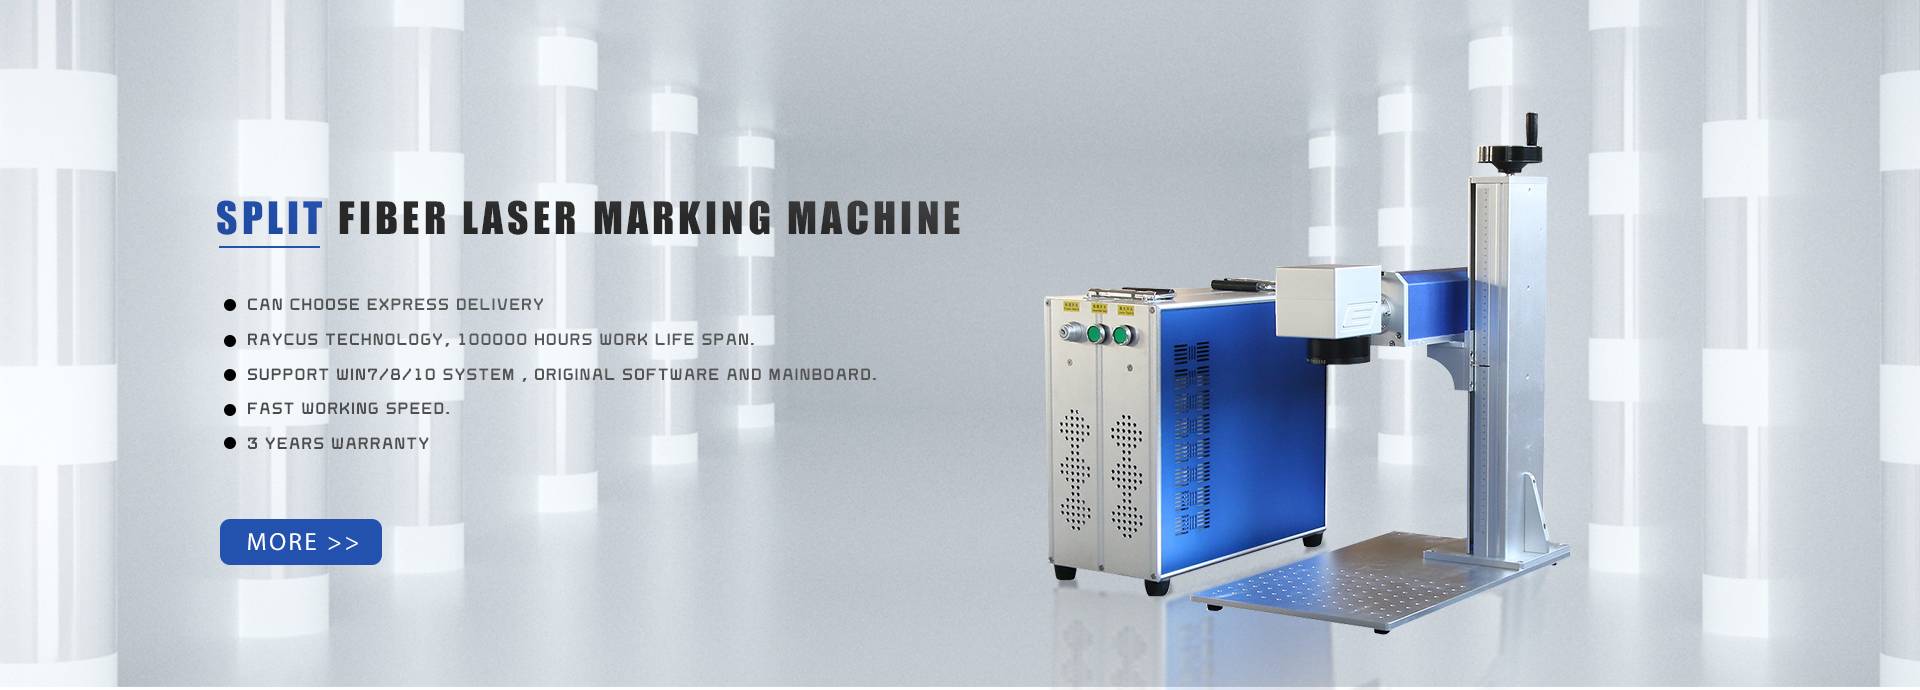 Kewara fiber laser marking machine